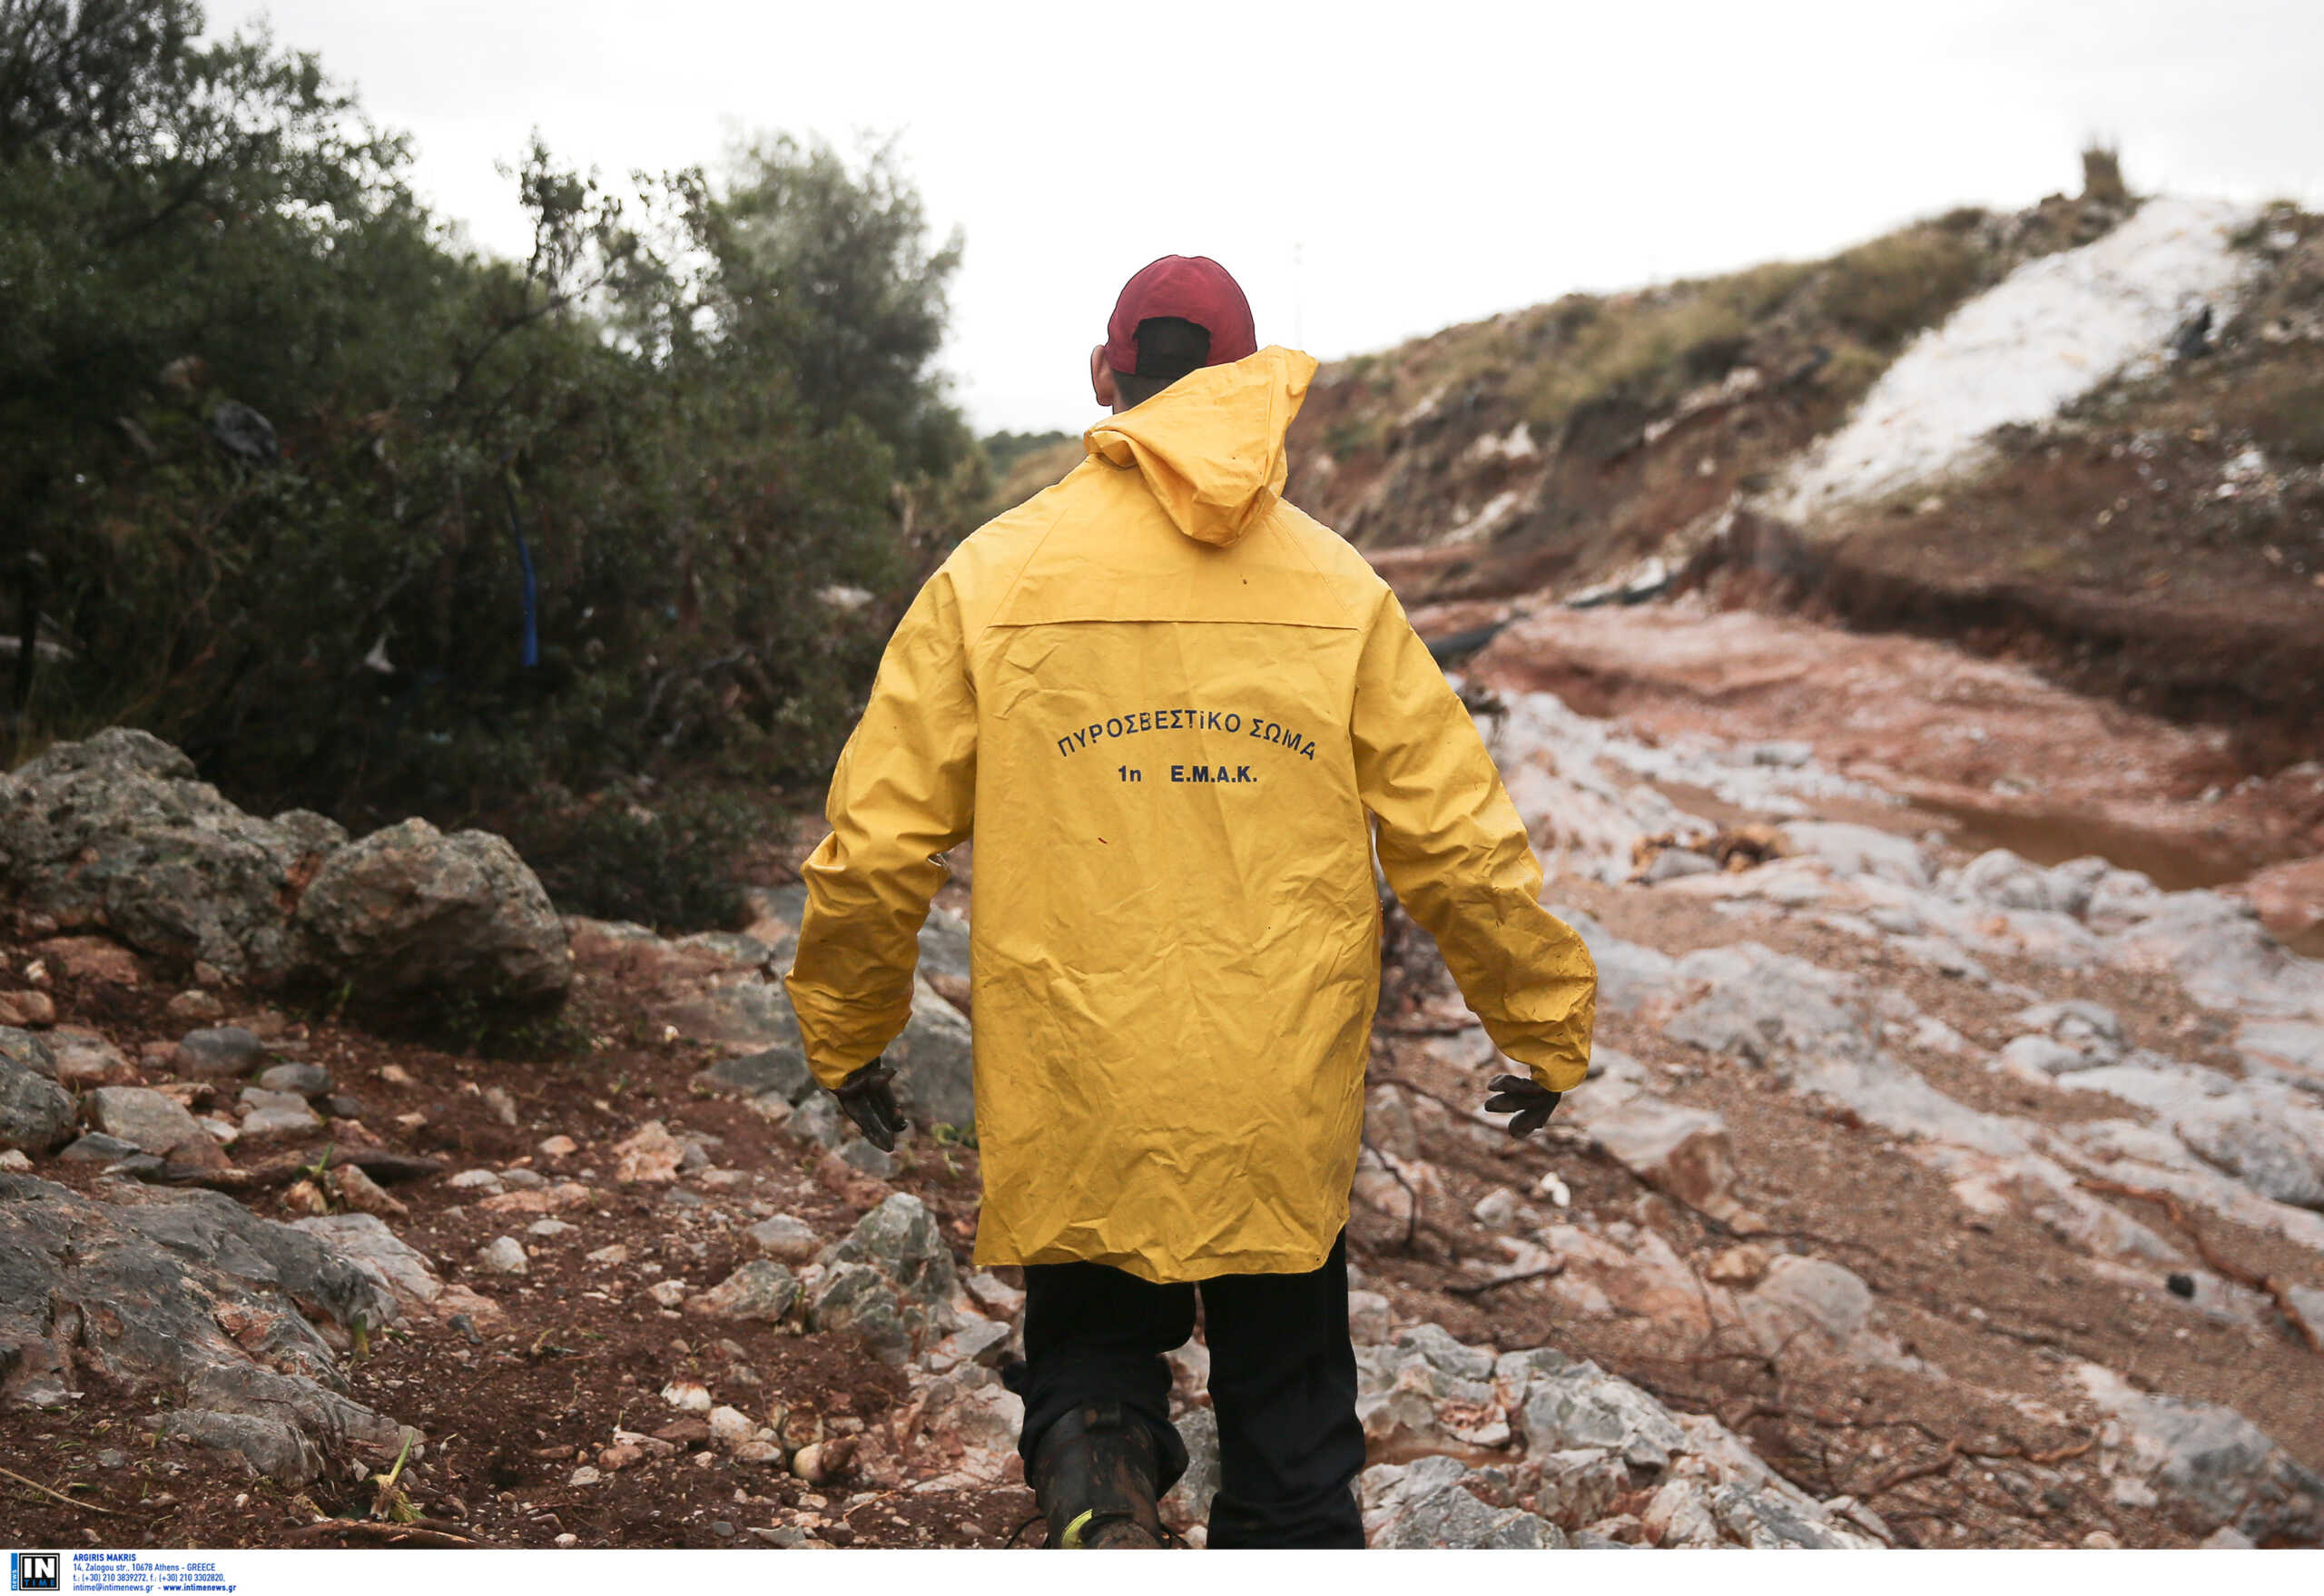 Ιωάννινα: Επιχείρηση της ΕΜΑΚ για τον απεγκλωβισμό κυνηγού που τραυματίστηκε από πτώση βράχου